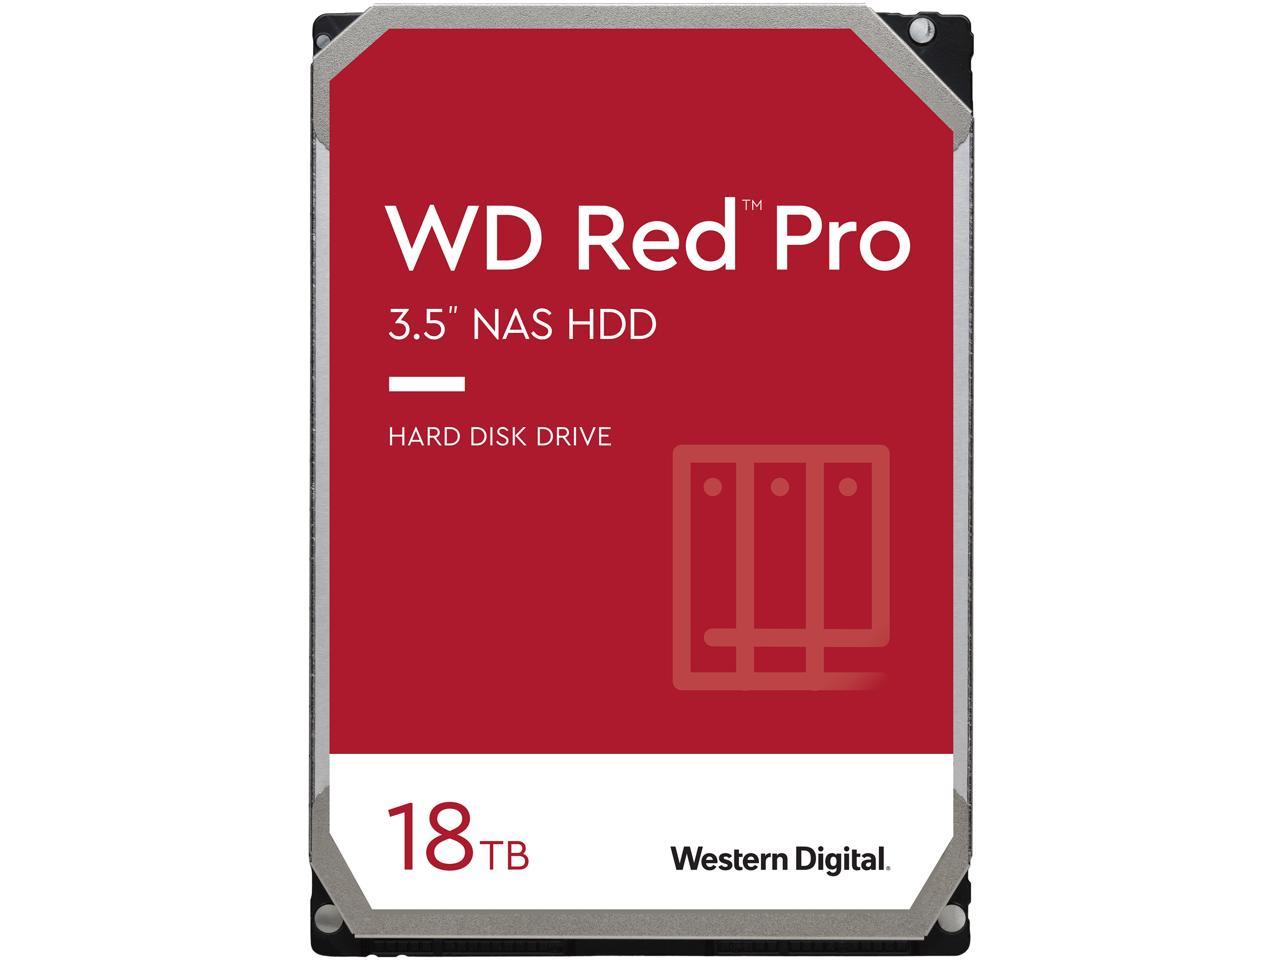 18TB WD Red Pro 7200 RPM 3.5" Internal Hard Drive $360